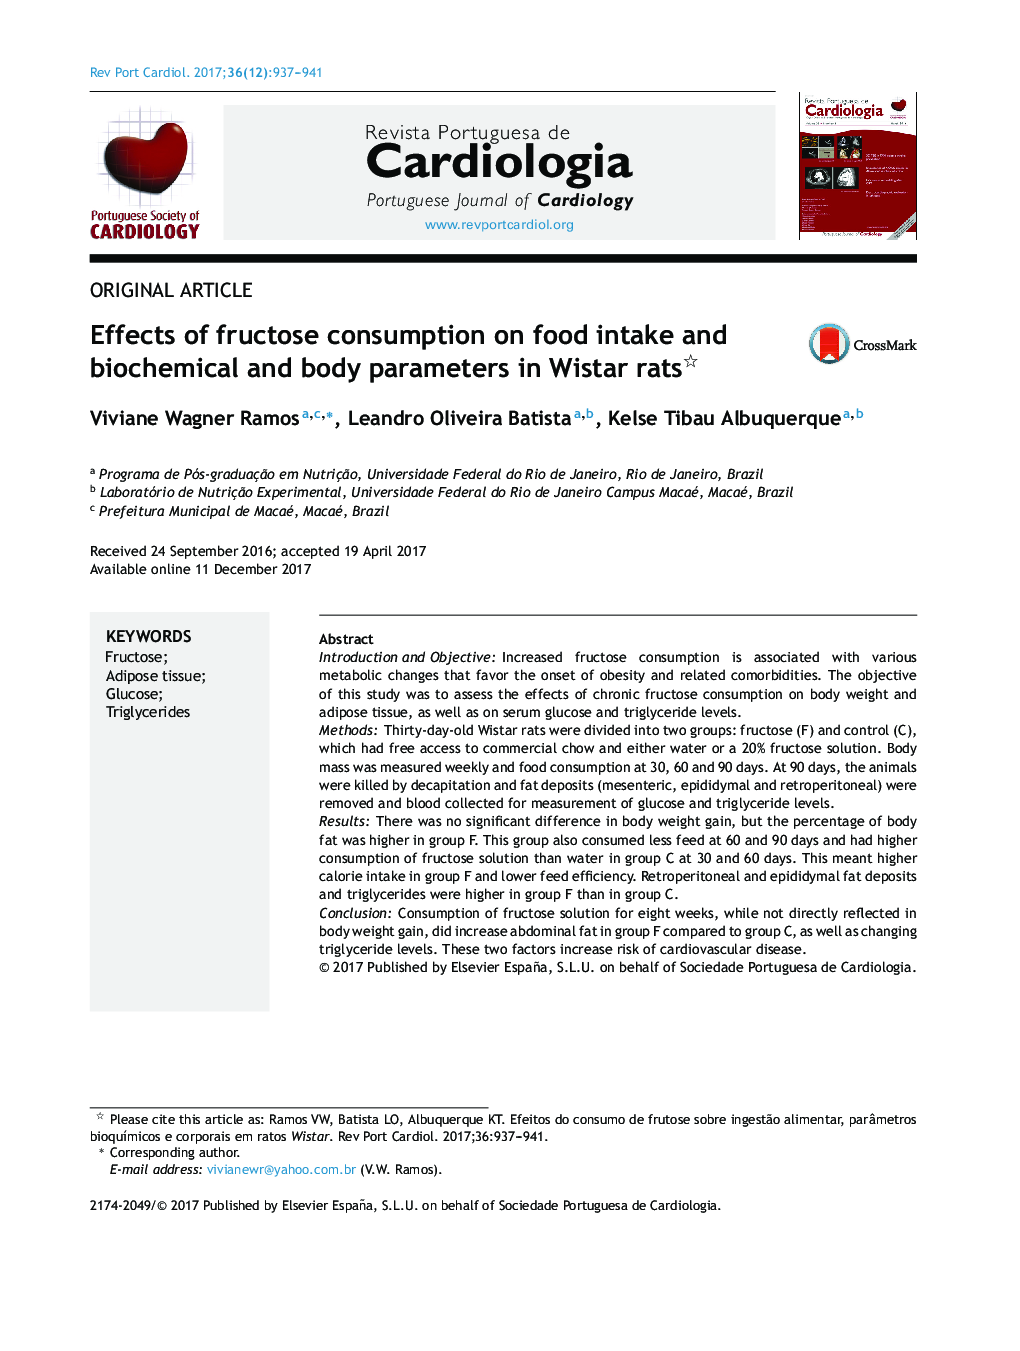 اثر مصرف فروکتوز بر مصرف غذا و پارامترهای بیوشیمیایی و بدن در موش های صحرایی ویستار 